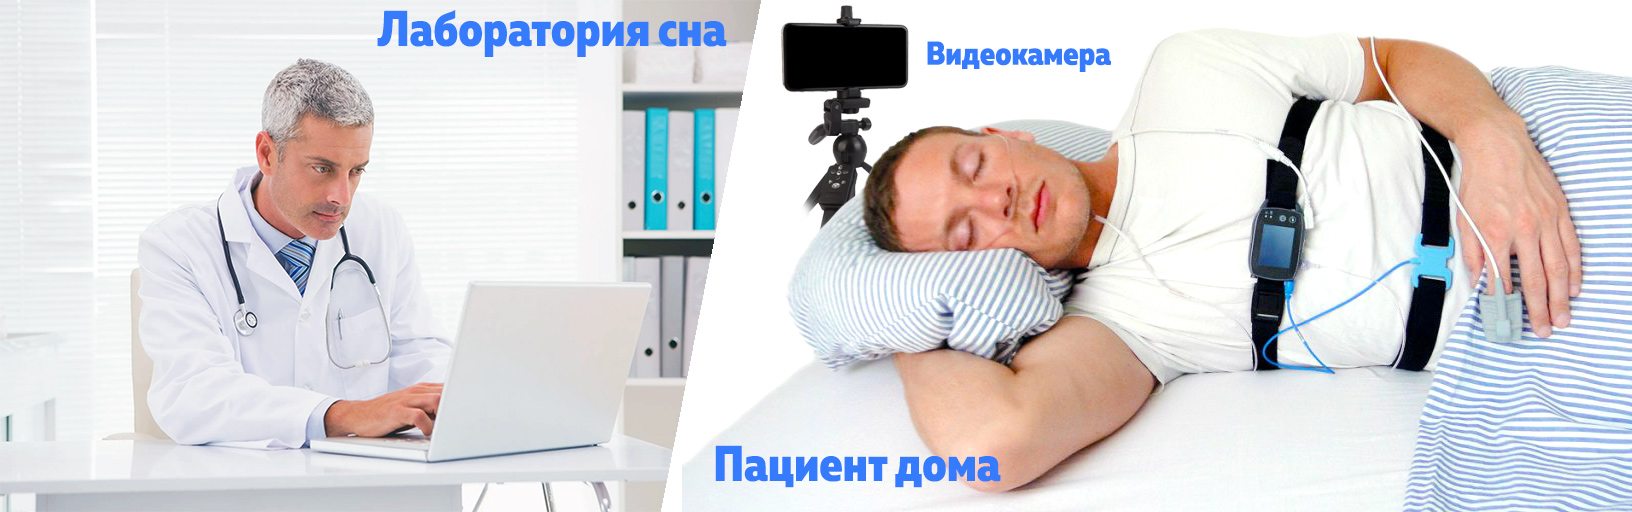 Сомнолог в лаборатории сна, пациент - полиграф полисомнограф исследование на дому спит в кровати видеонаблюдение SOMNOtouch RESP SOMNOmedics